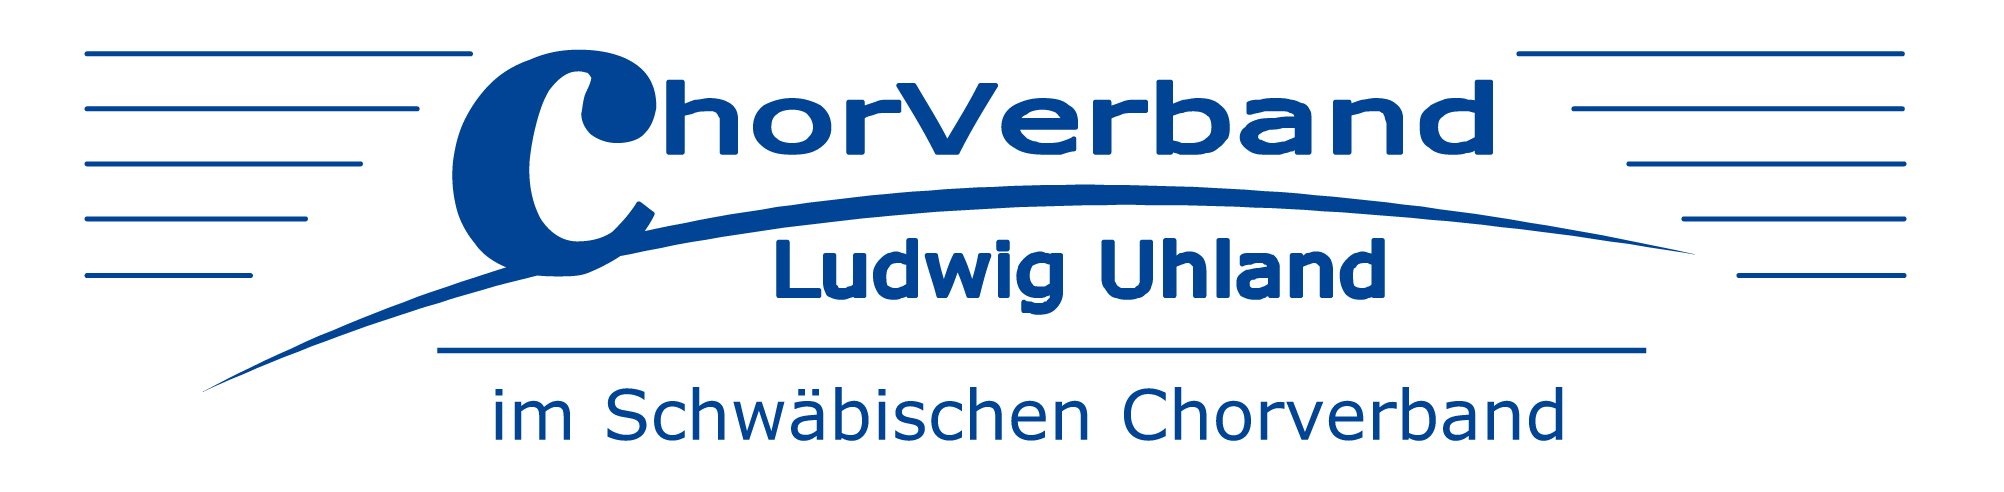 Logo Chorverband Ludwig Uhland